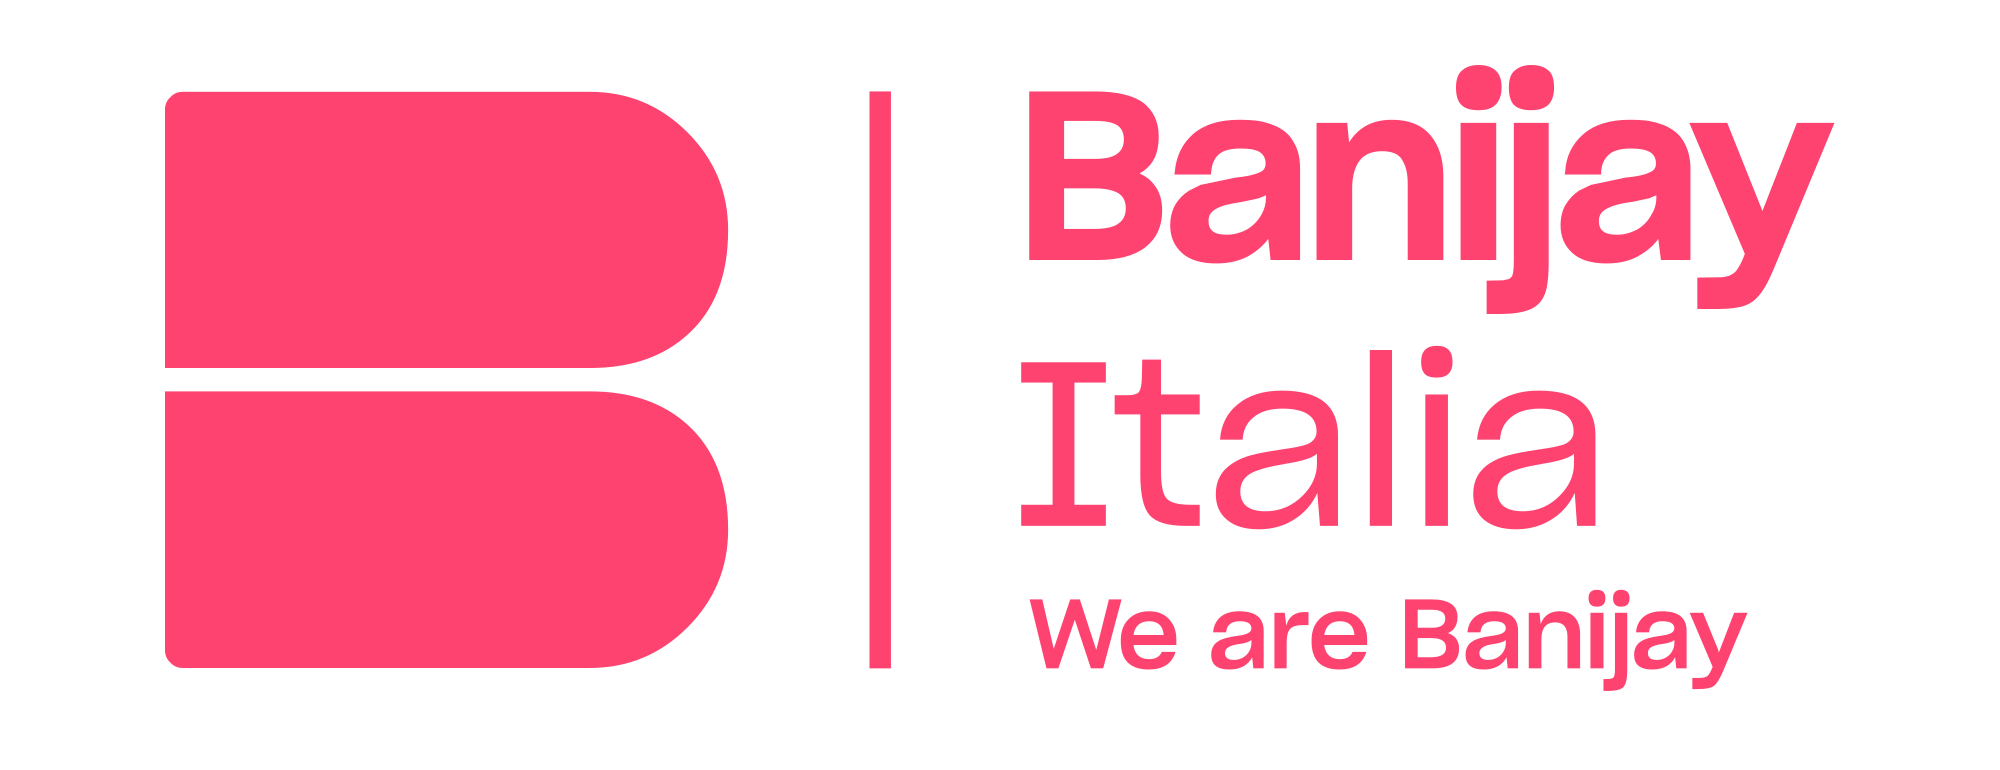 Banijay Italia - company